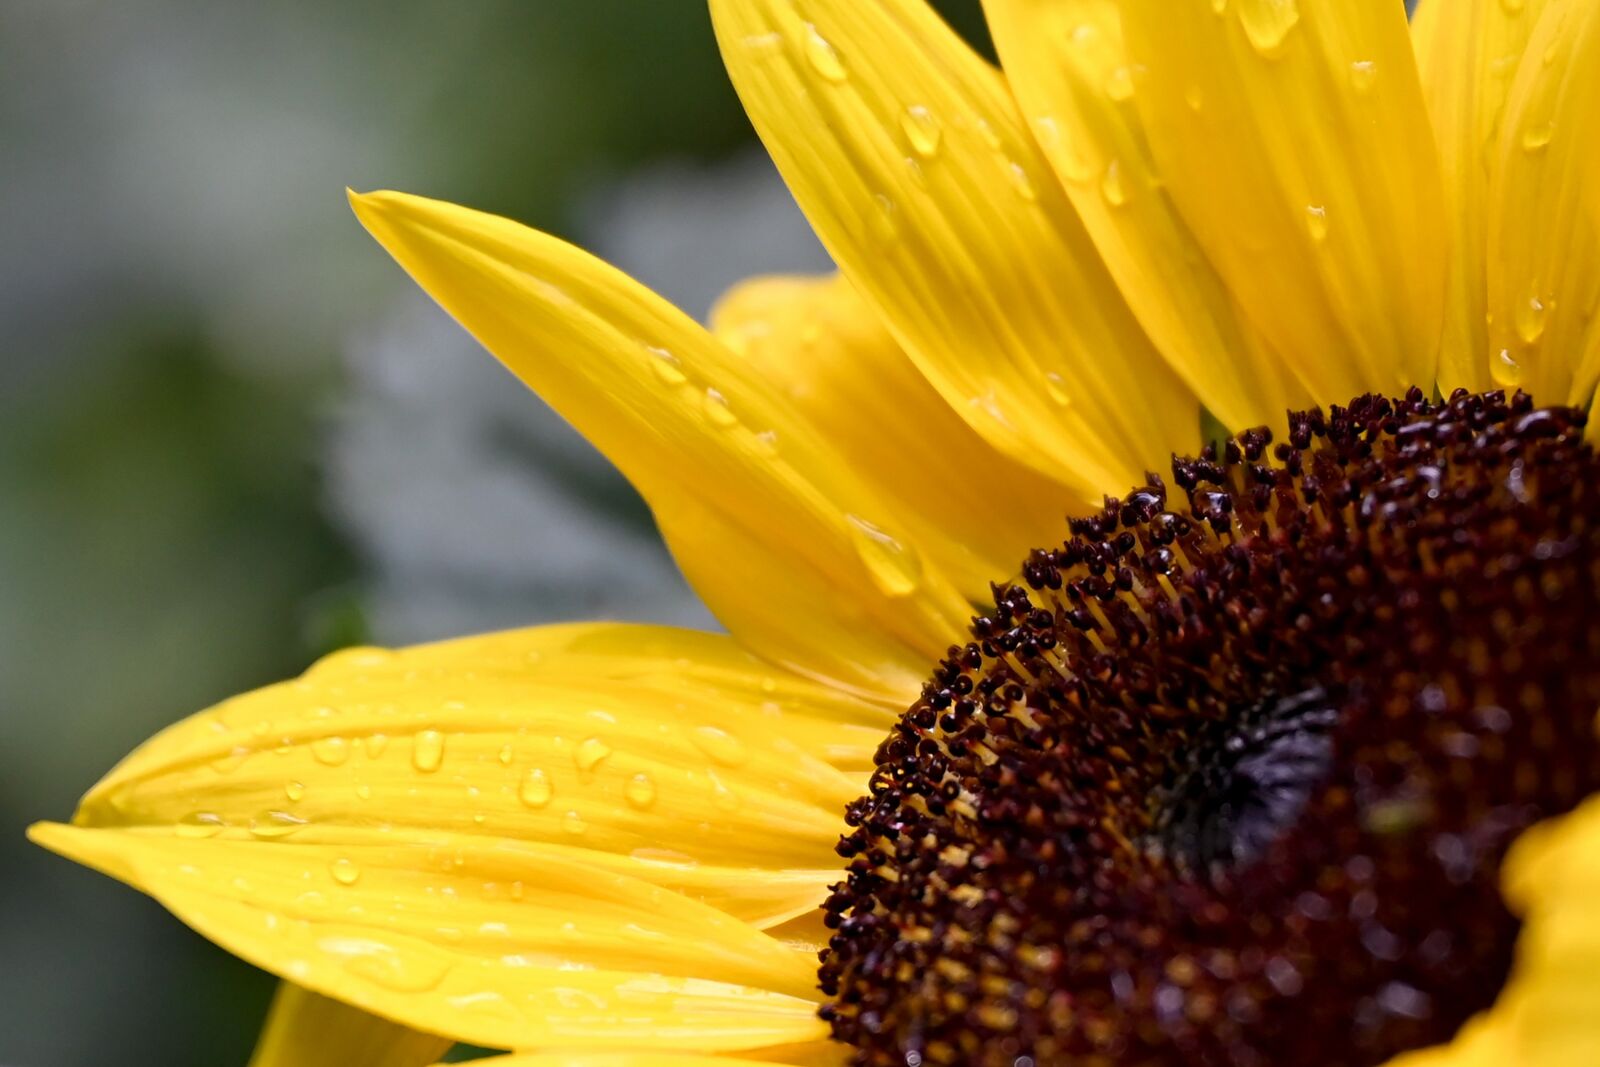 Nikon Nikkor Z 24-70mm F2.8 S sample photo. Sunflower, flower, blossom photography